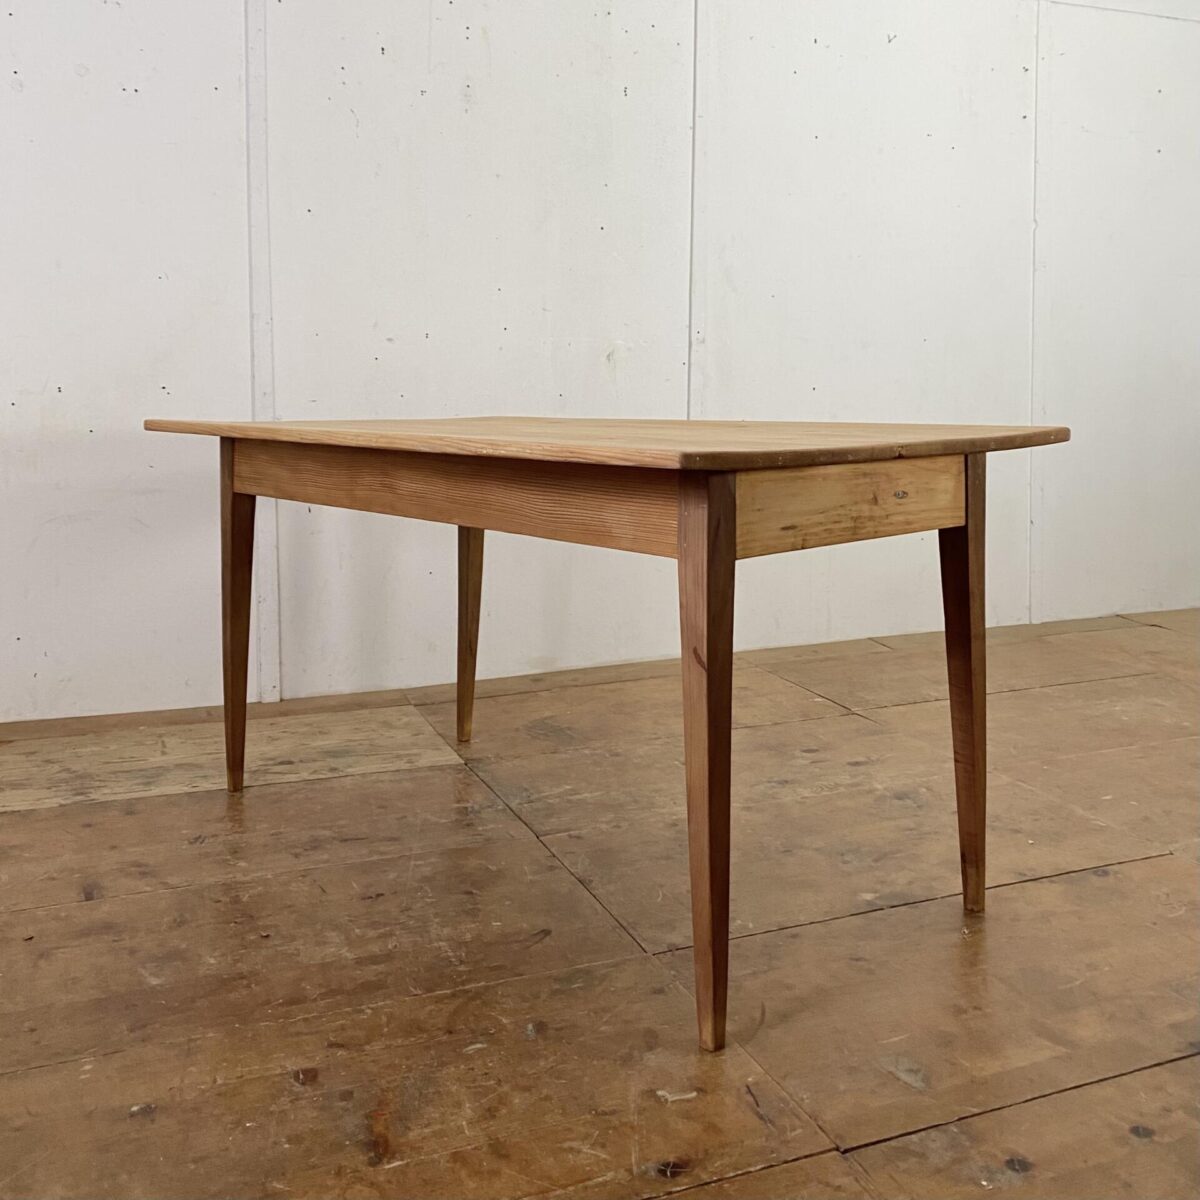 Deuxieme.shop Biedermeiertisch aus Tanne. 150x88cm Höhe 75.5cm. Der Tisch ist in stabilem überarbeiteten Zustand, die Holz Oberflächen sind geschliffen und mit Naturöl behandelt. An dem Tisch finden 4-6 Personen Platz. 